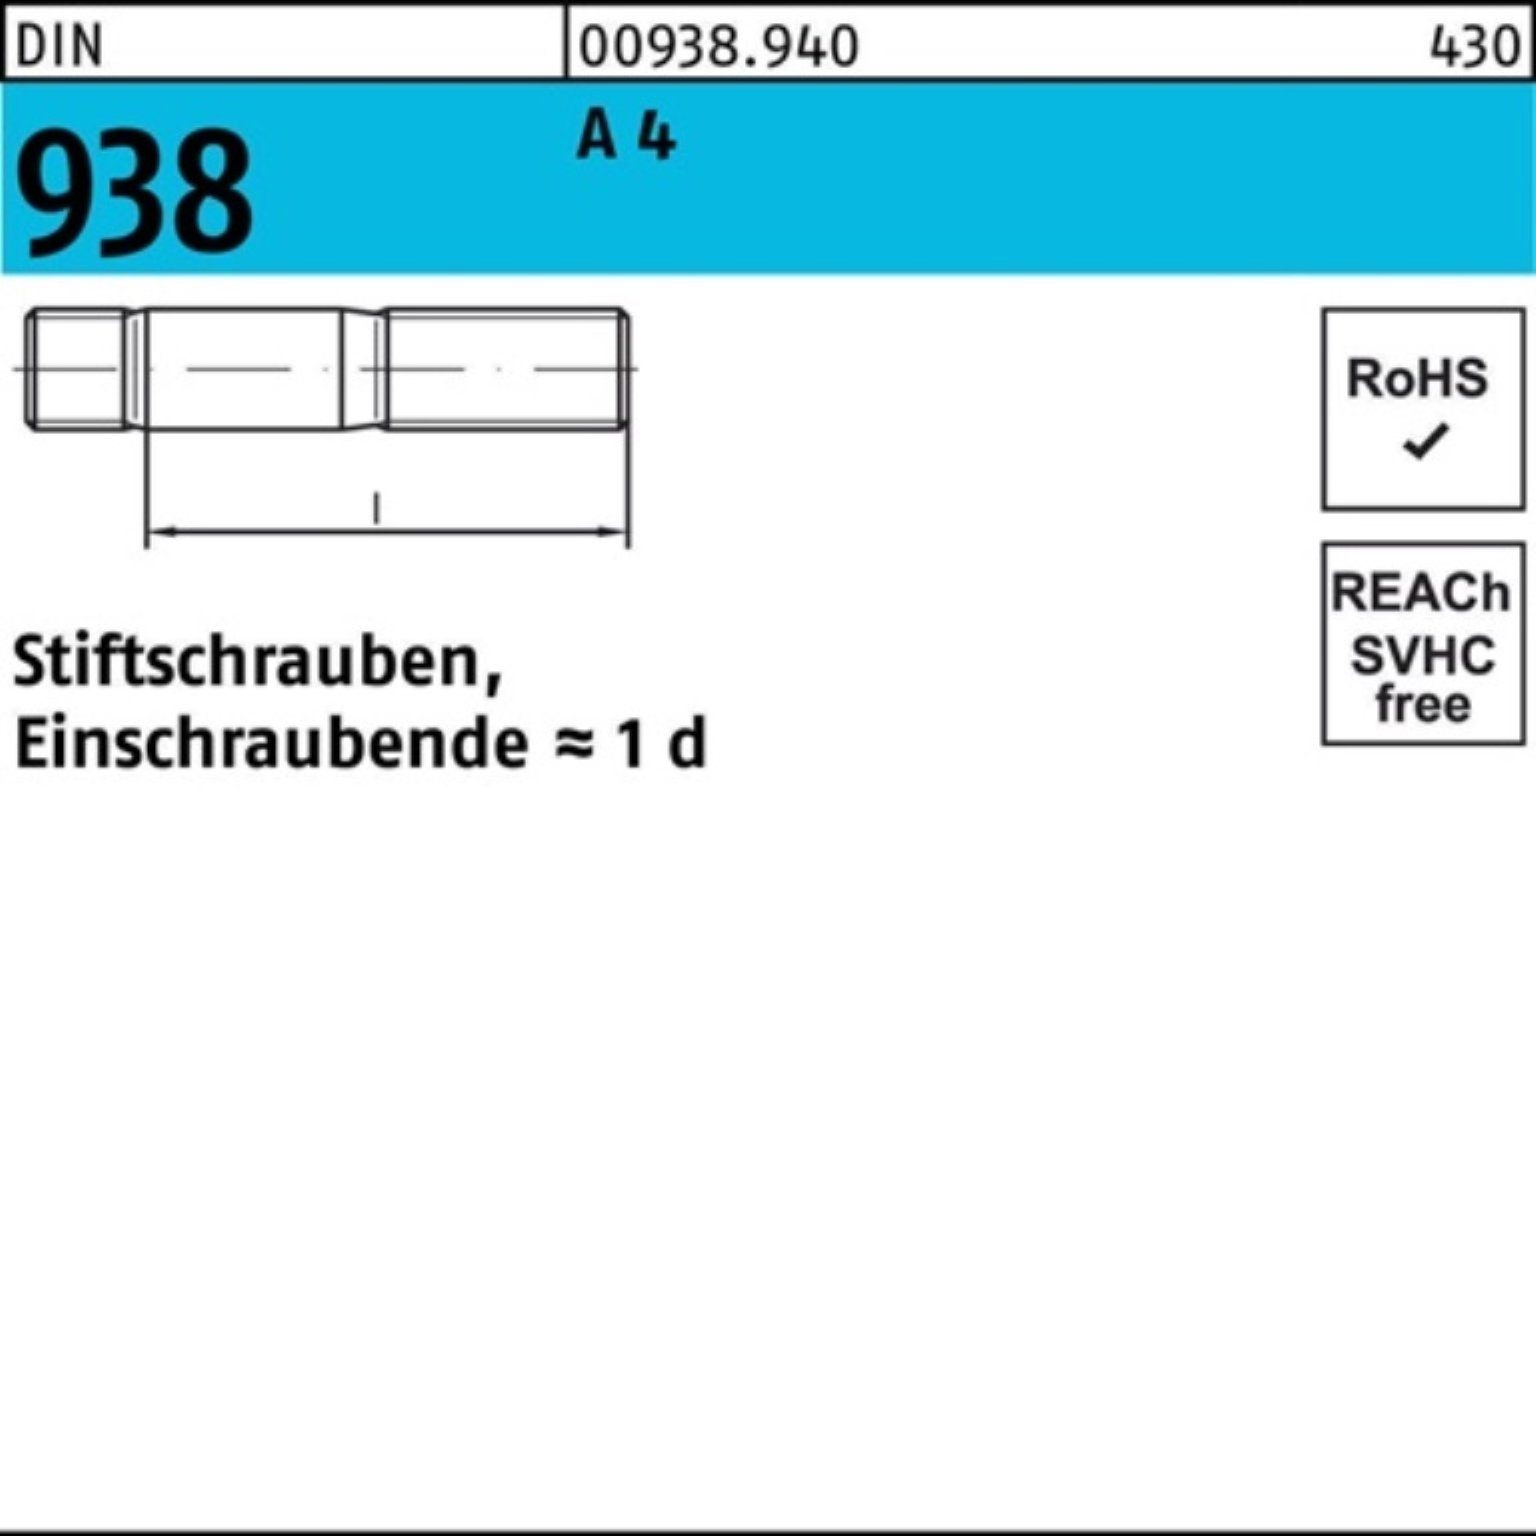 Reyher Stiftschraube 100er Stiftschraube Pack Stück 938 A M20x DIN A 4 Sti DIN 100 4 938 1